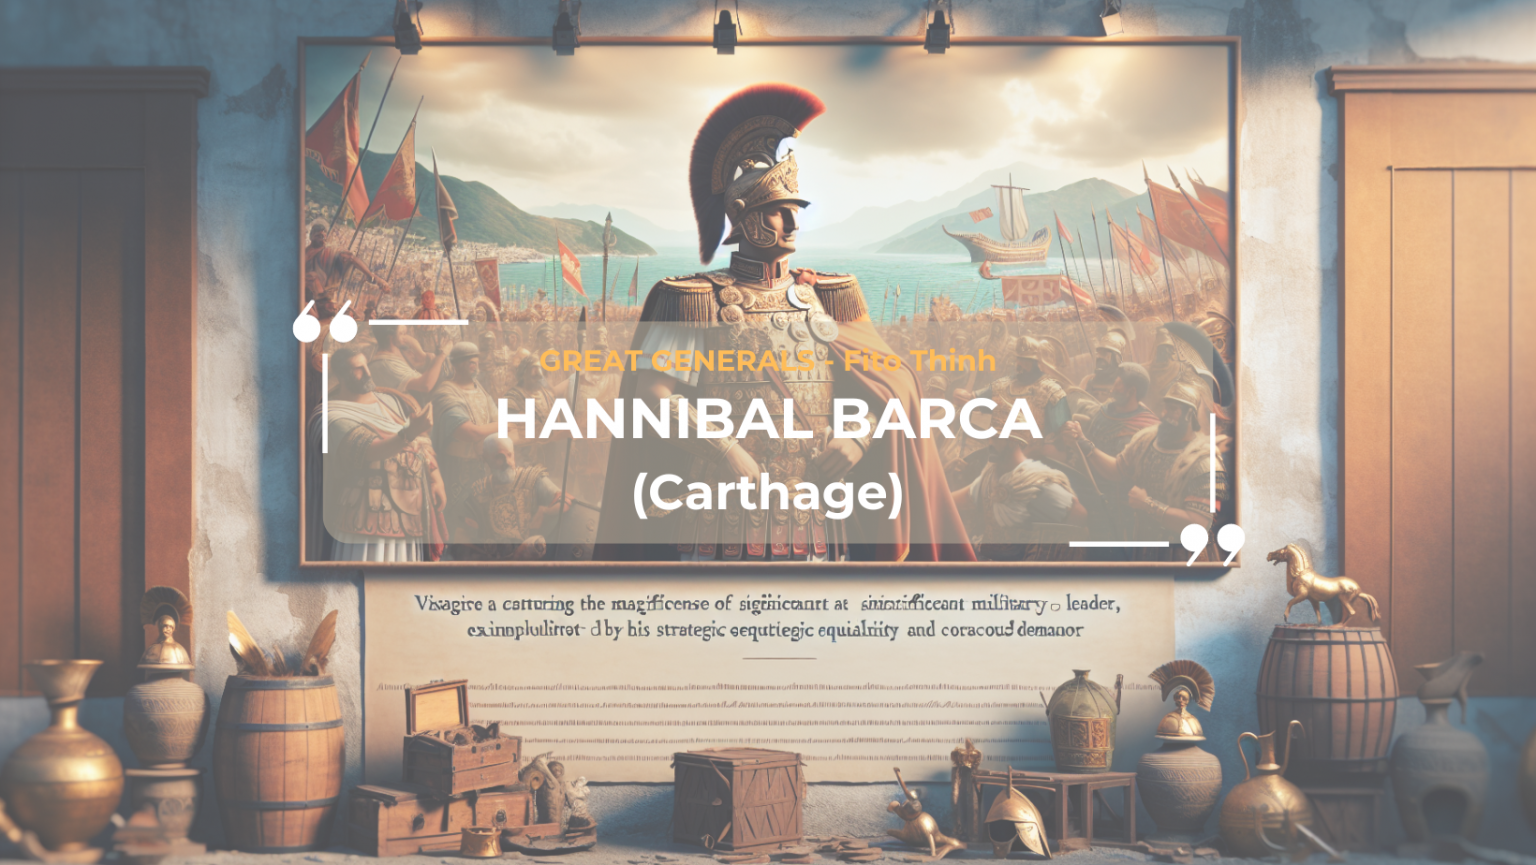 Hannibal Barca: Huyền thoại của Chiến tranh Punic